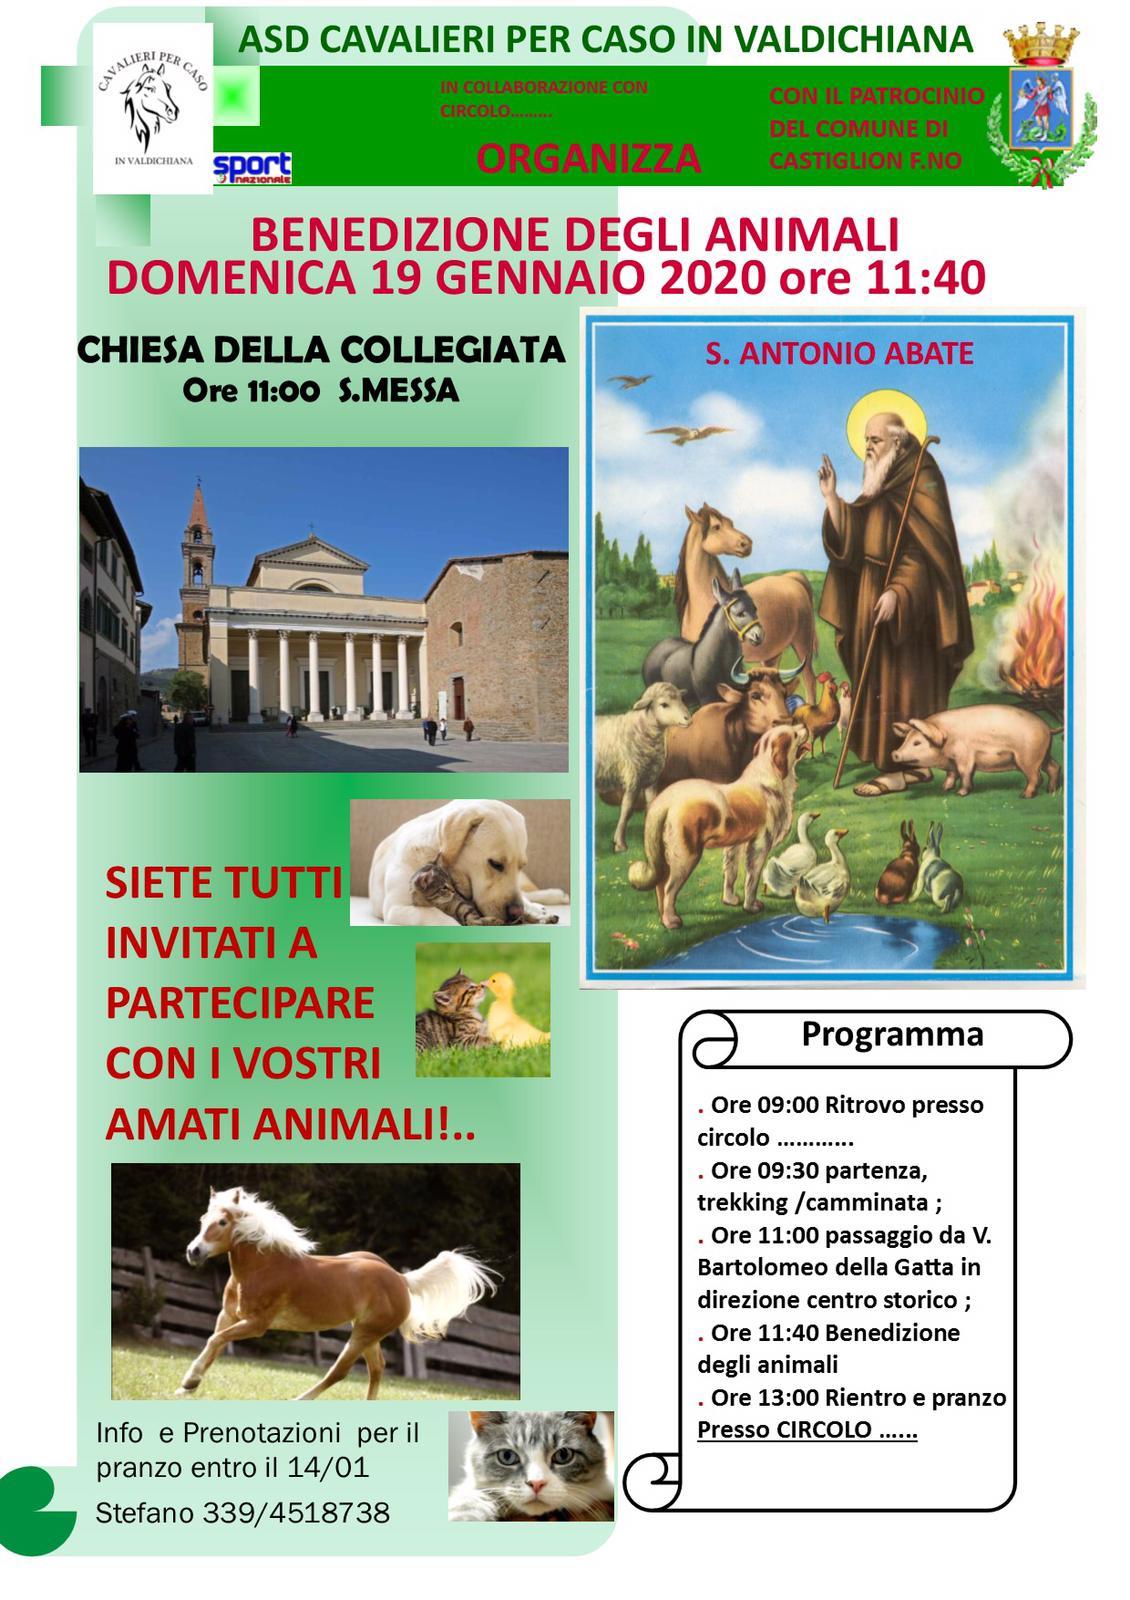 Benedizione degli animali: Domenica 19 gennaio alla Chiesa della Collegiata